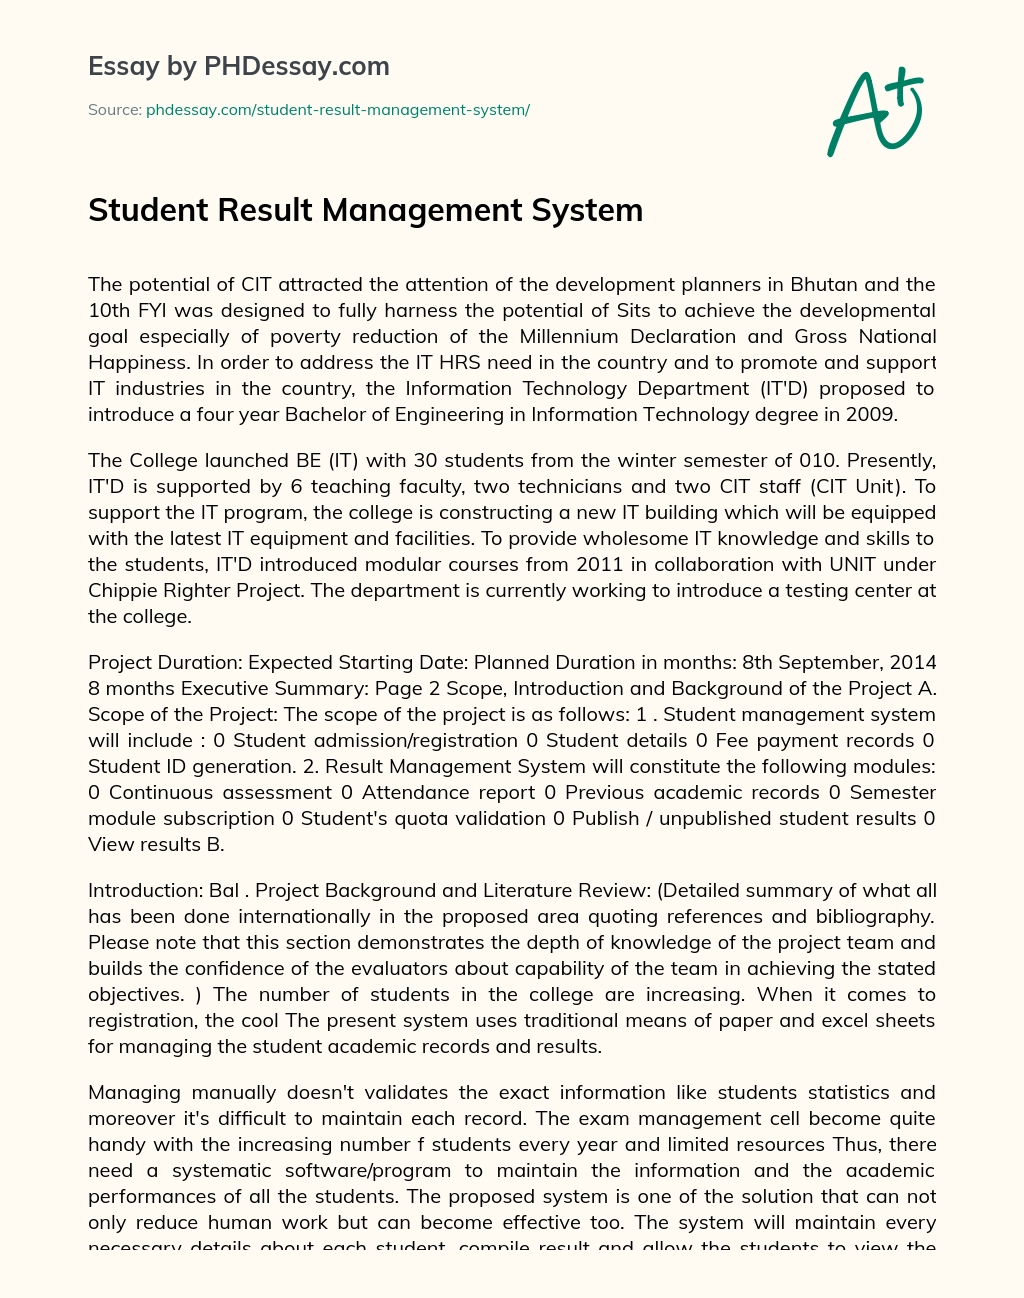 Student Result Management System essay